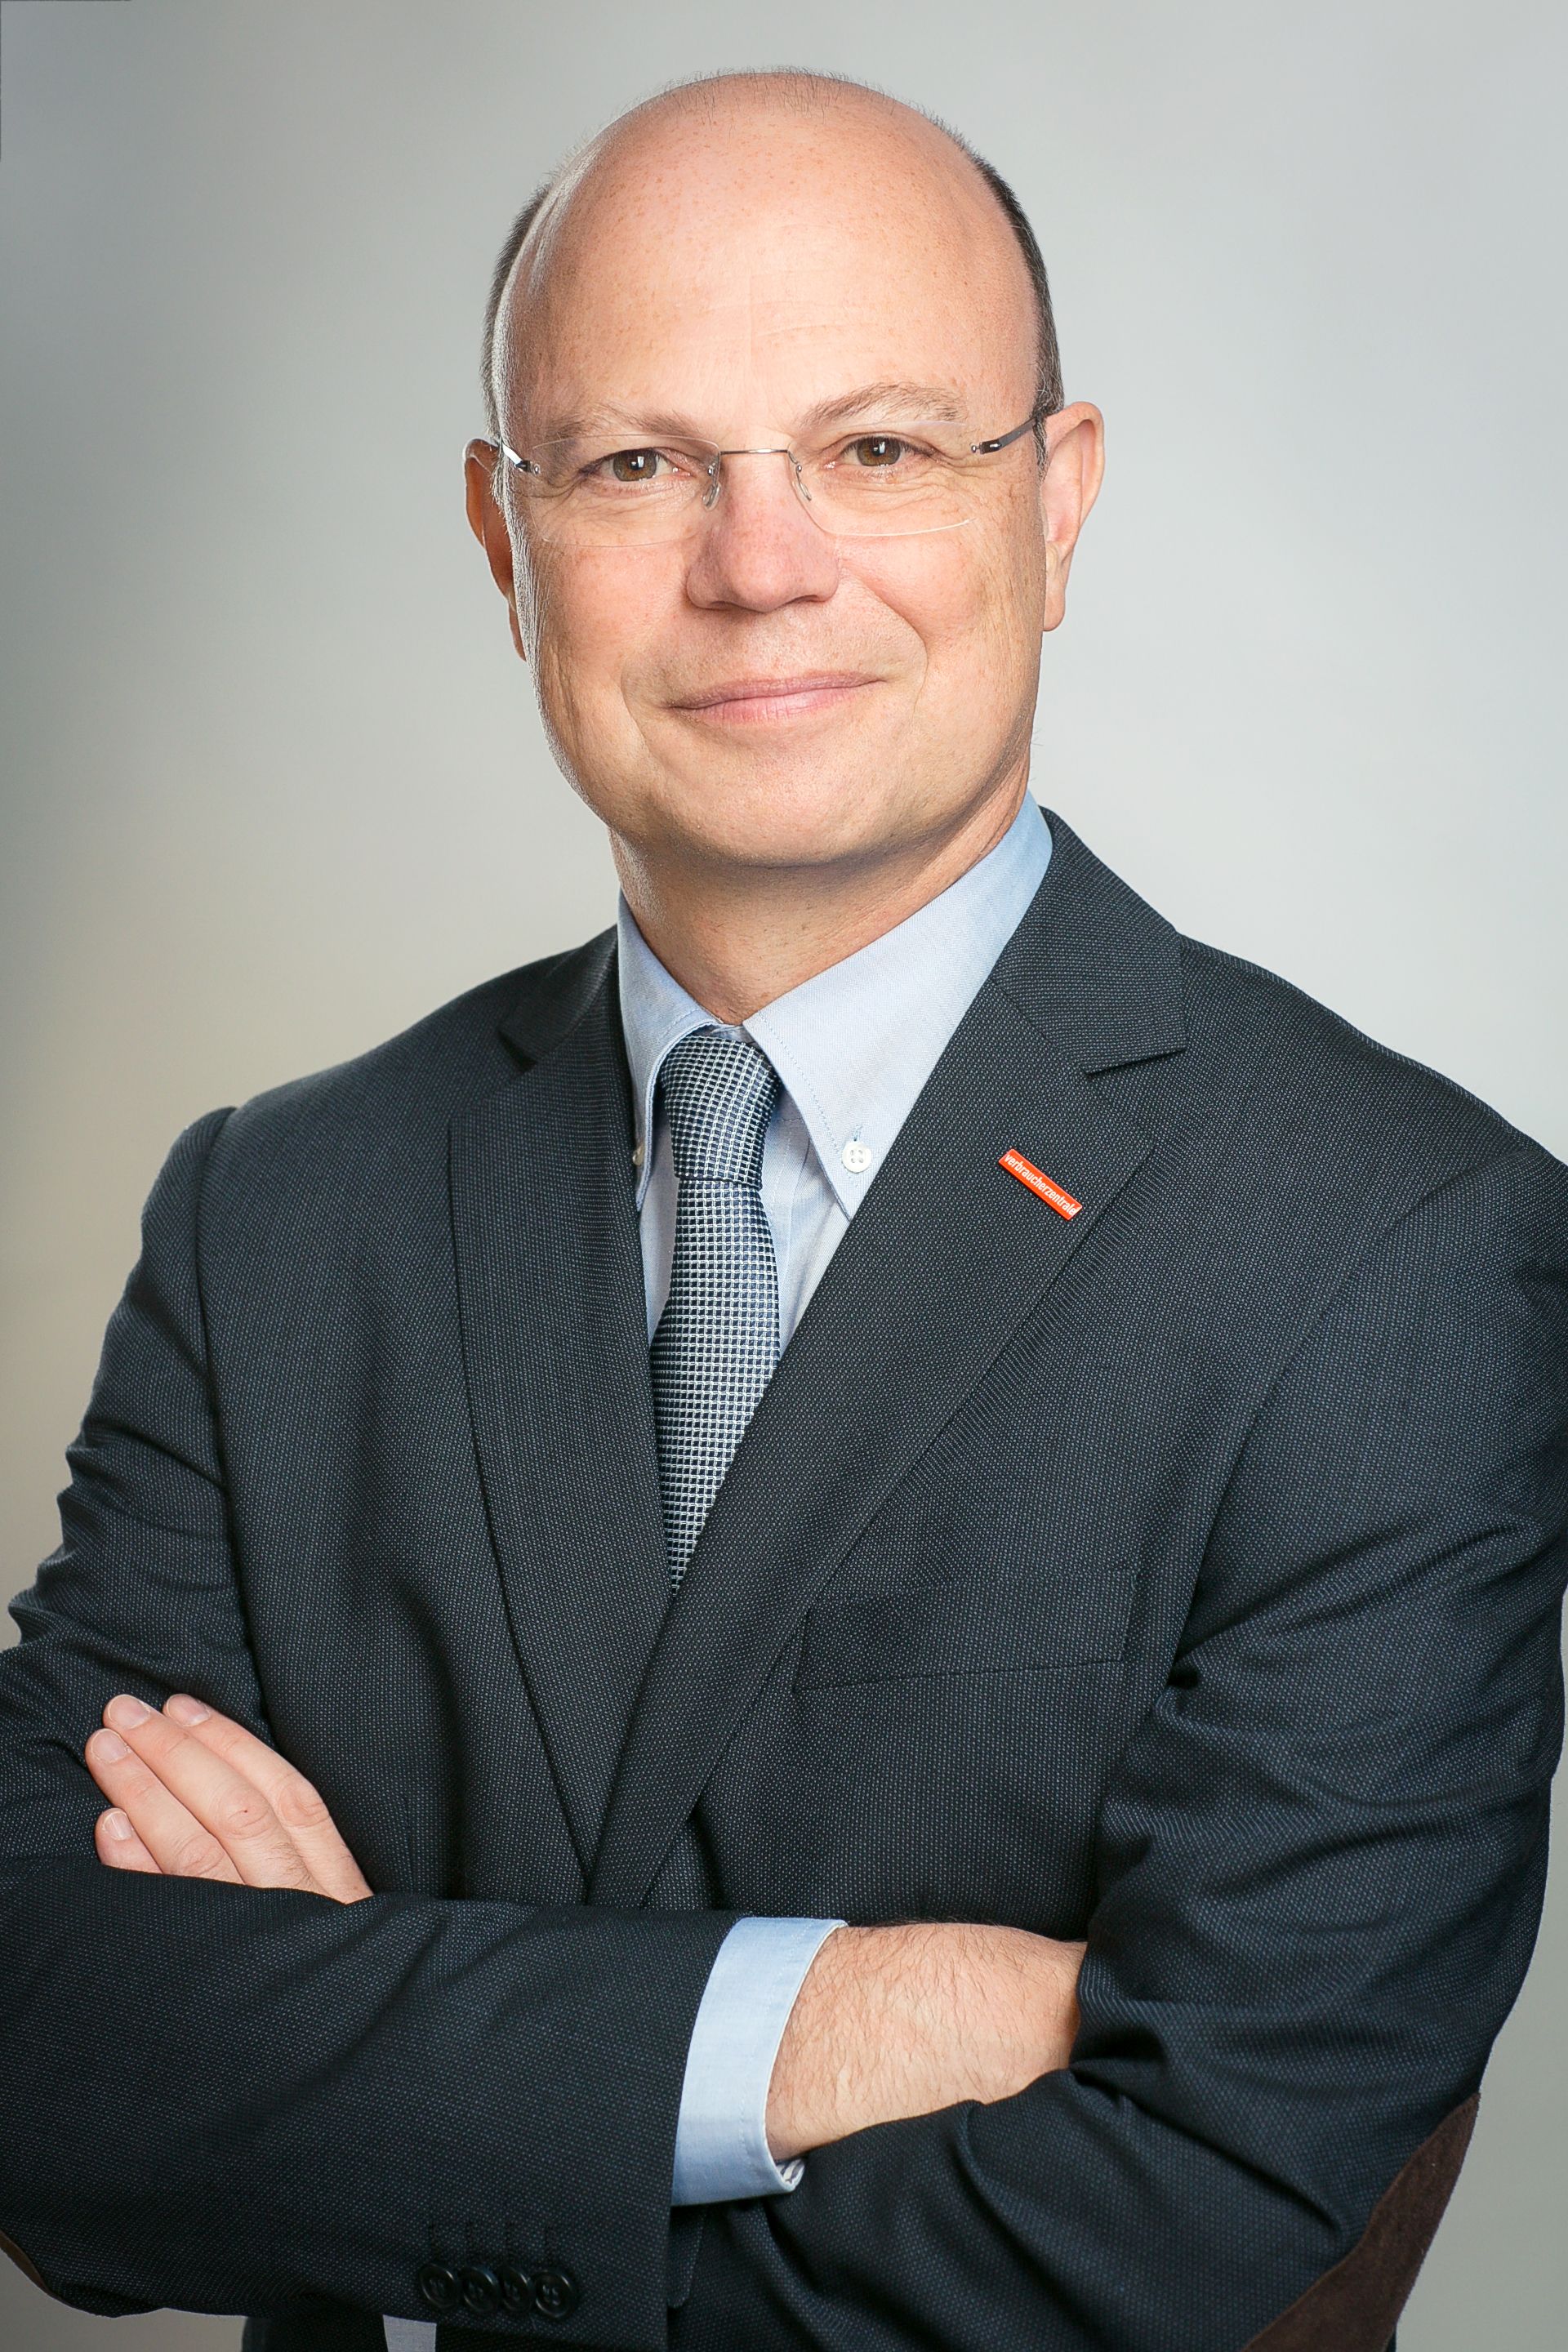 Pressebild Wolfgang Schuldzinski, Vorstand der Verbraucherzentrale NRW